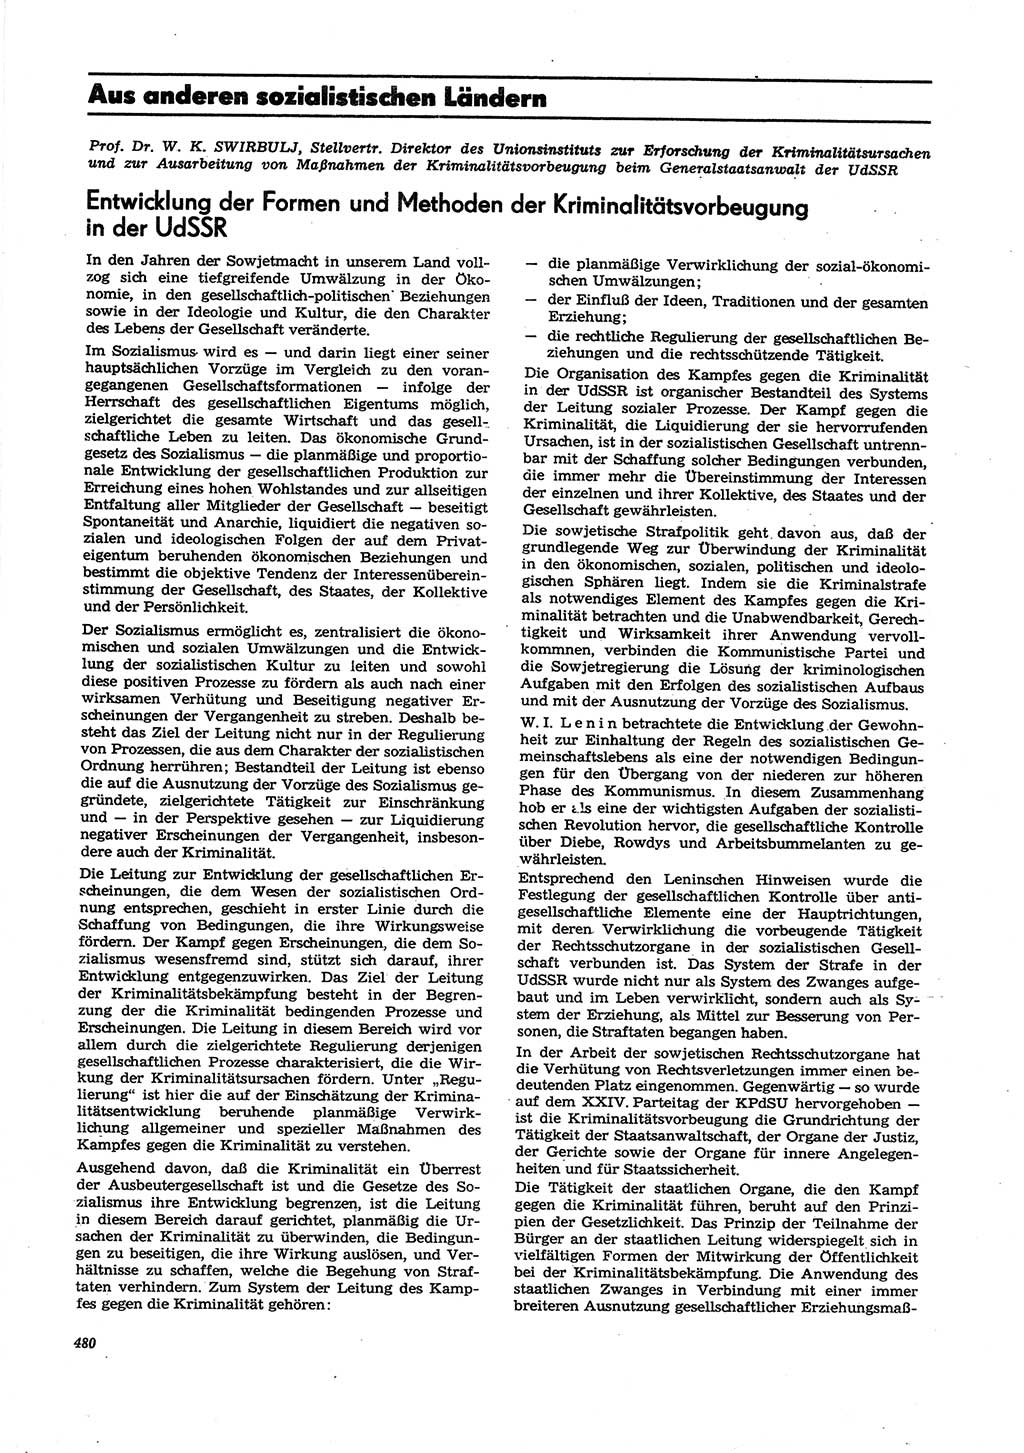 Neue Justiz (NJ), Zeitschrift für Recht und Rechtswissenschaft [Deutsche Demokratische Republik (DDR)], 27. Jahrgang 1973, Seite 480 (NJ DDR 1973, S. 480)